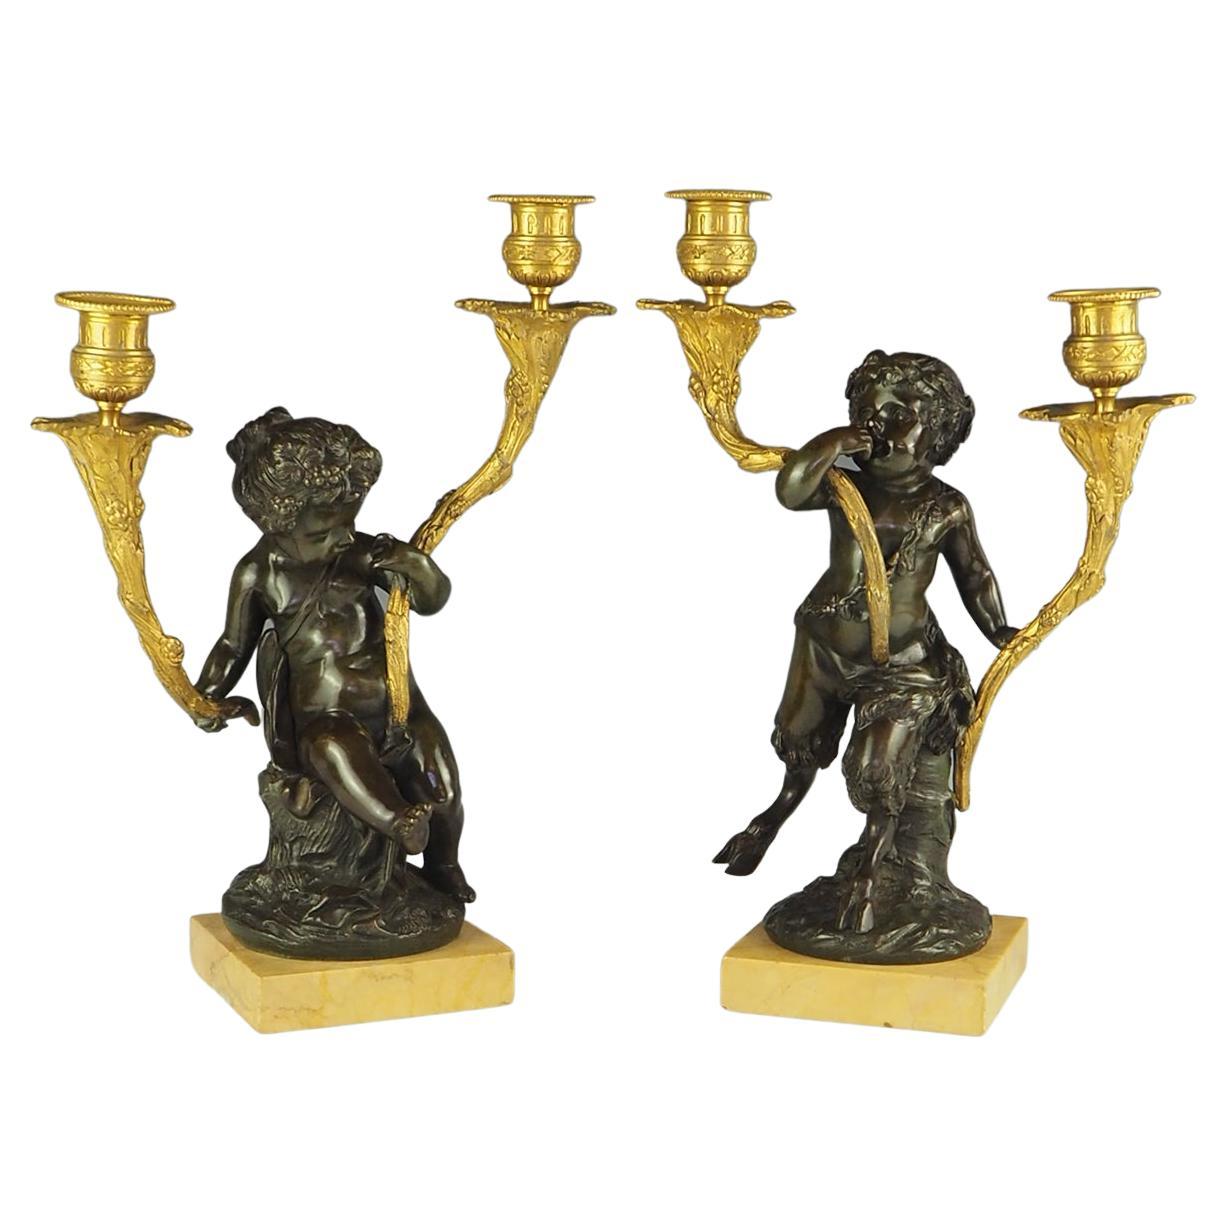 Paire de candélabres français en bronze massif et bronze doré, datant d'environ 1820